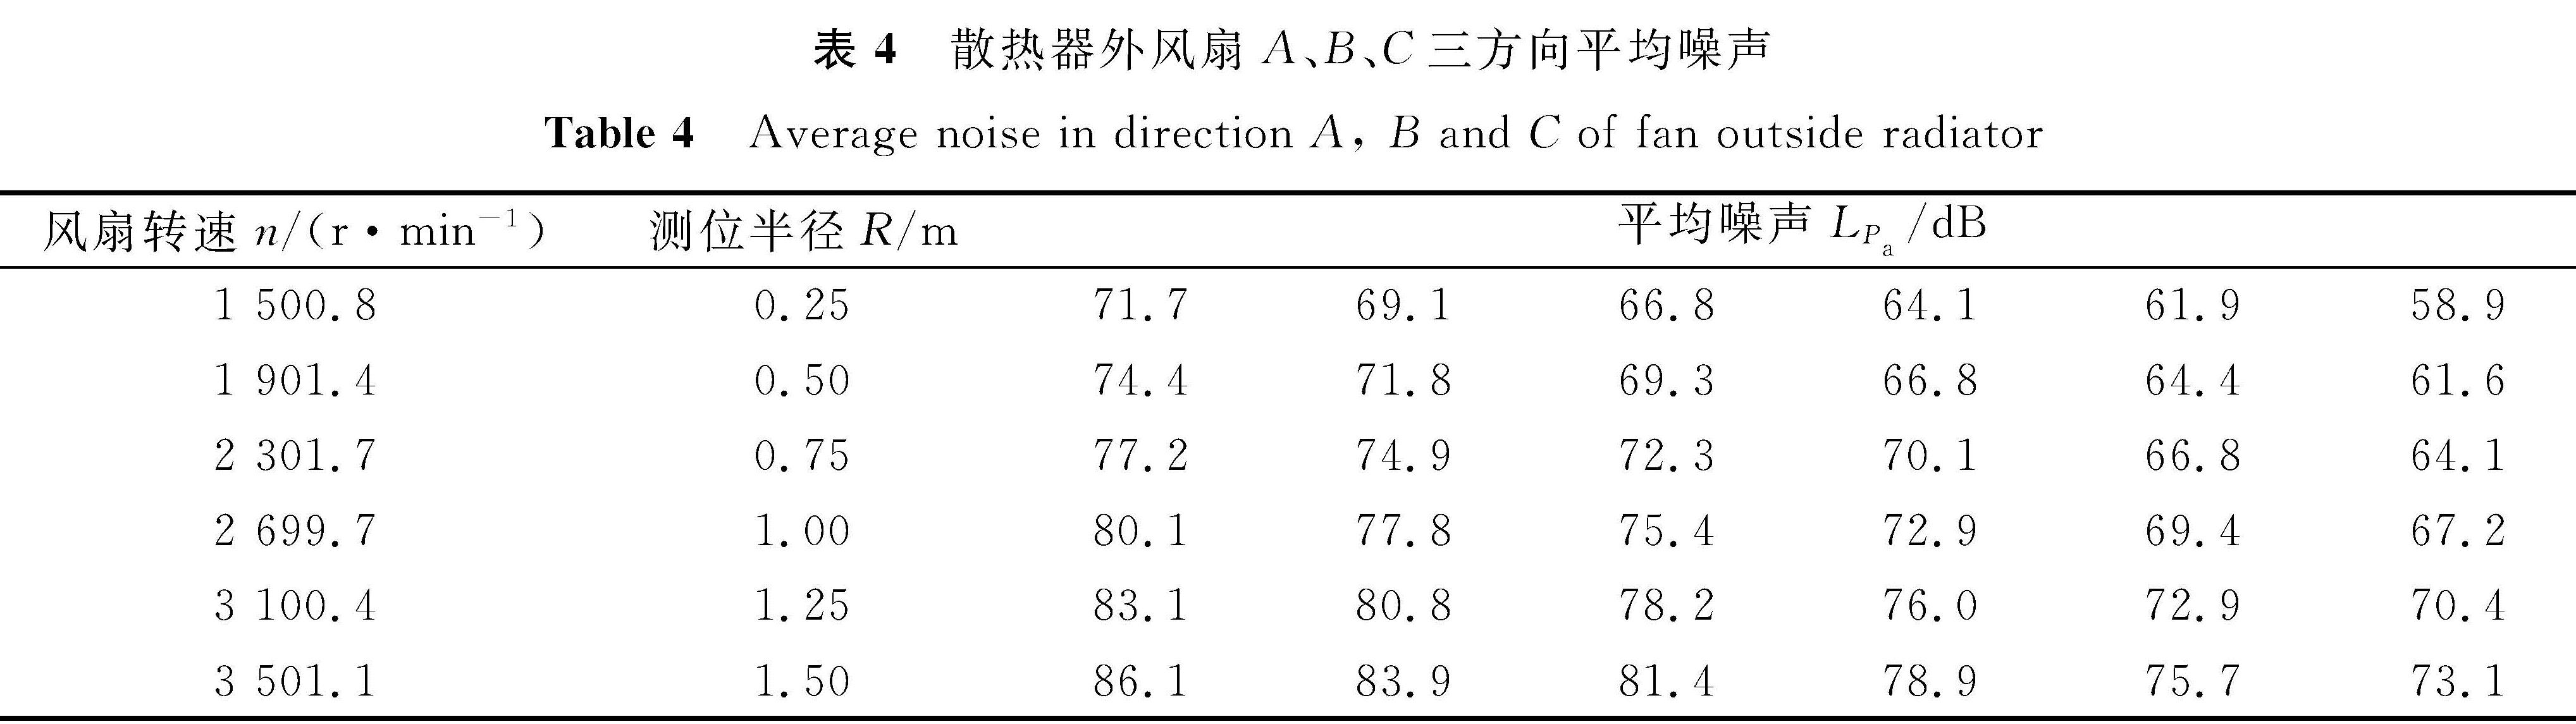 表4 散热器外风扇A、B、C三方向平均噪声<br/>Table 4 Average noise in direction A, B and C of fan outside radiator